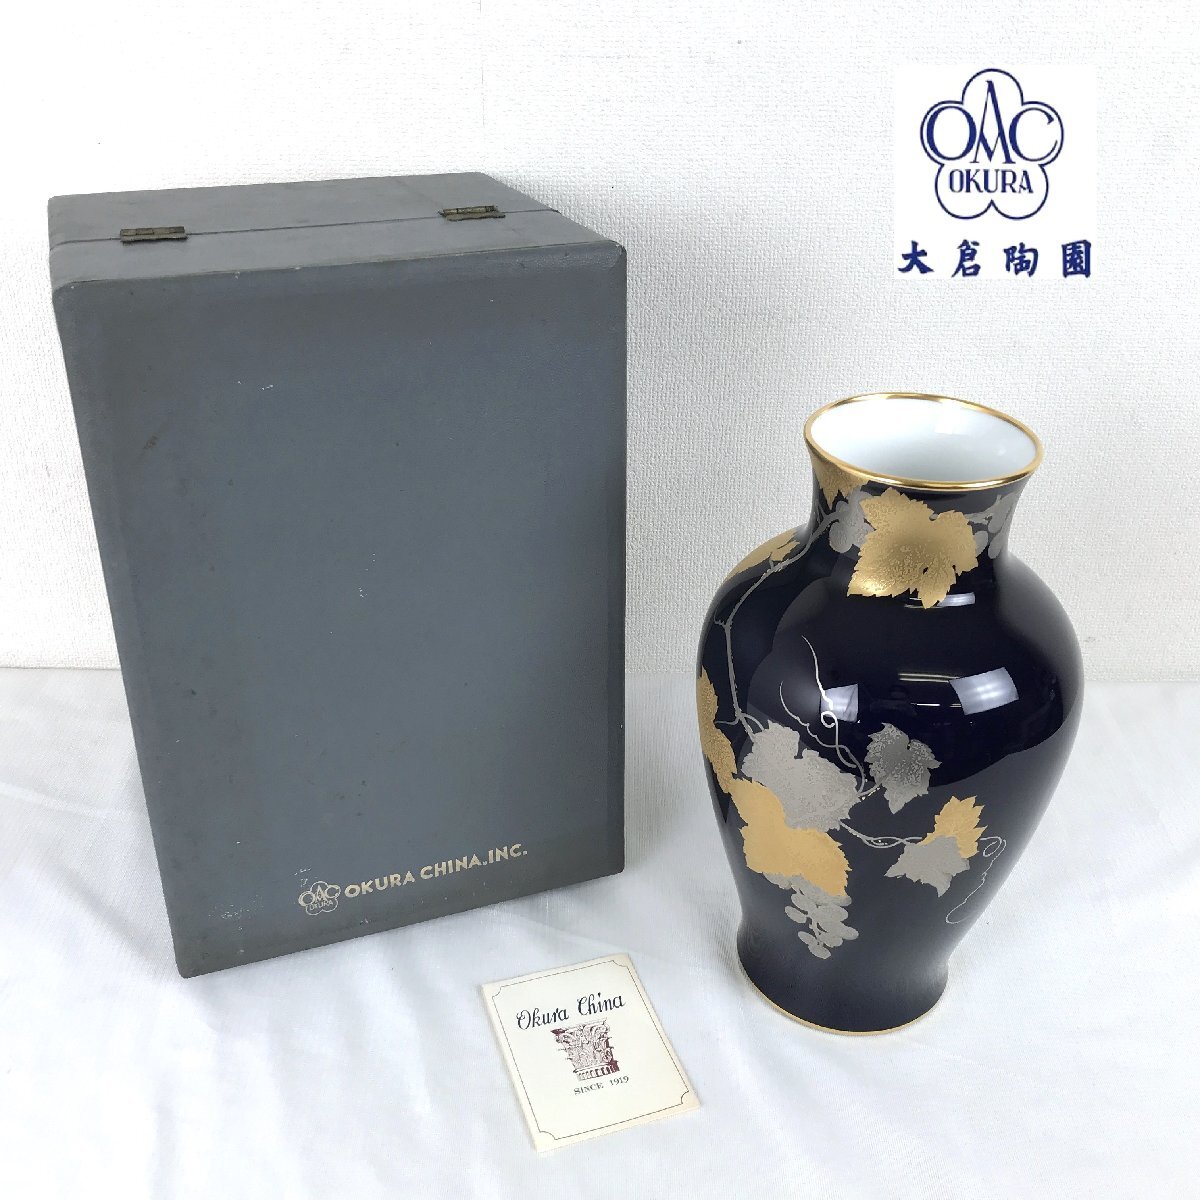 1203 OKURA 大倉陶園 花瓶 金蝕バラ 金彩 瑠璃色 葡萄図 高さ27.5cm 花器 花びん フラワーベース 箱付き_画像1